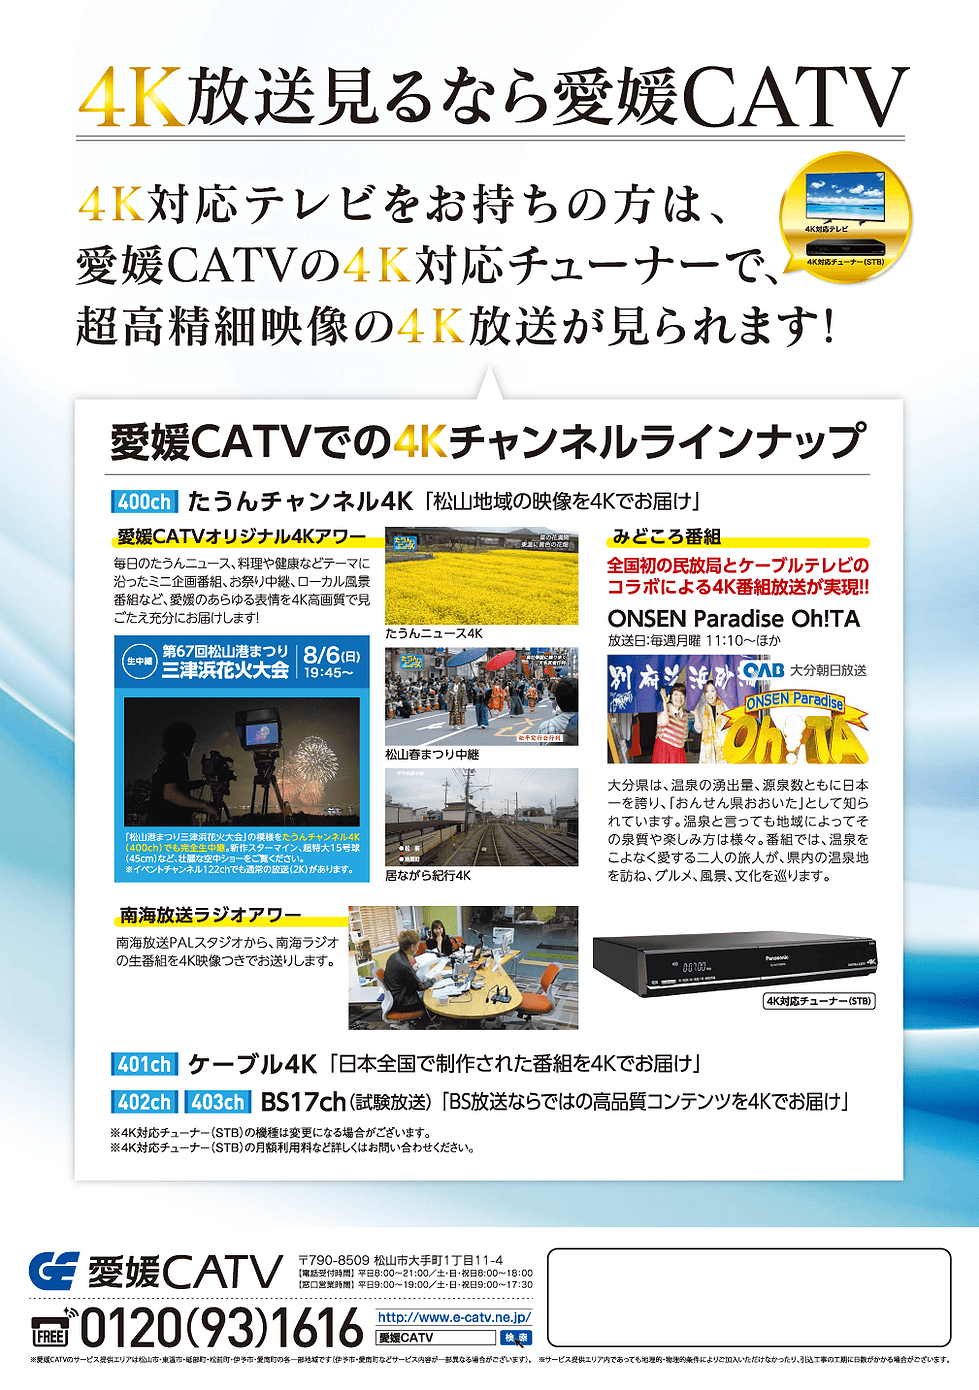 4kテレビセットプラン 愛媛catv